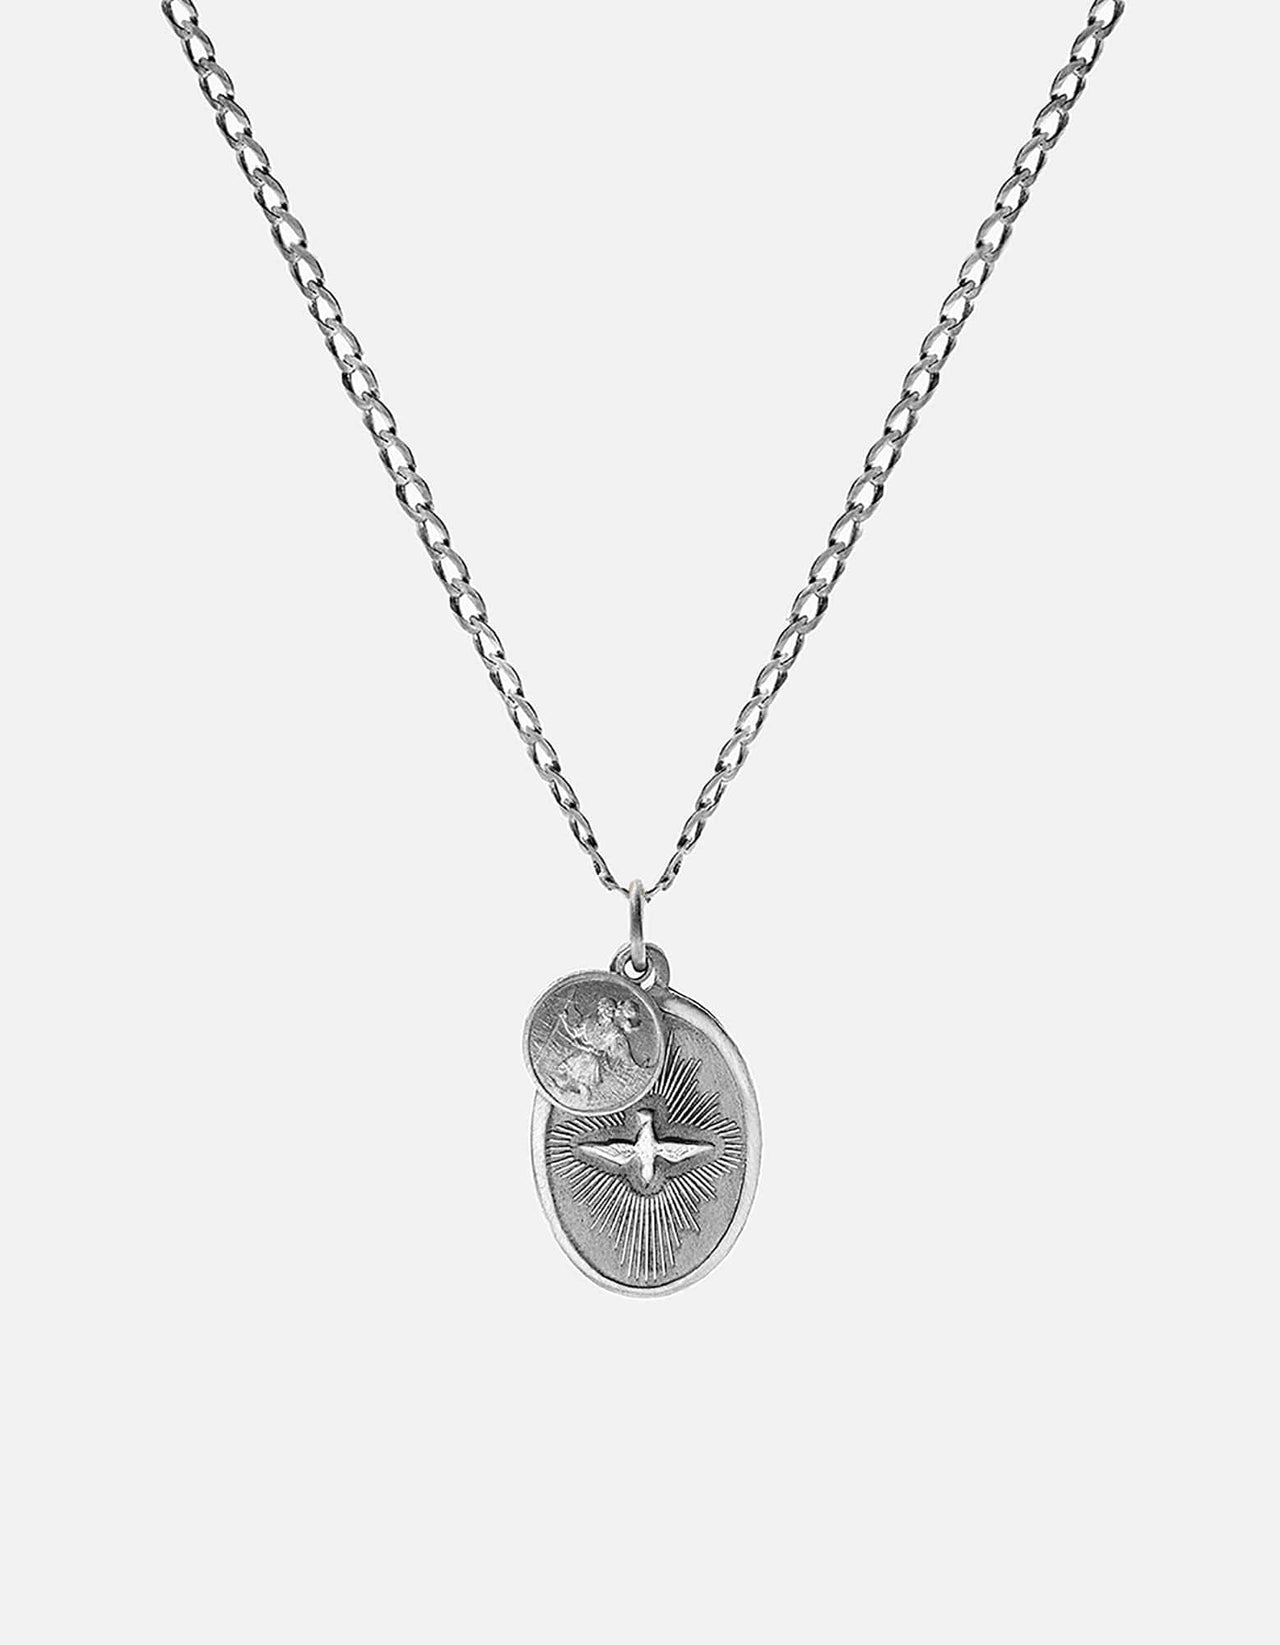 Dove Pendant Necklace, Sterling Silver | Men's Necklaces | Miansai